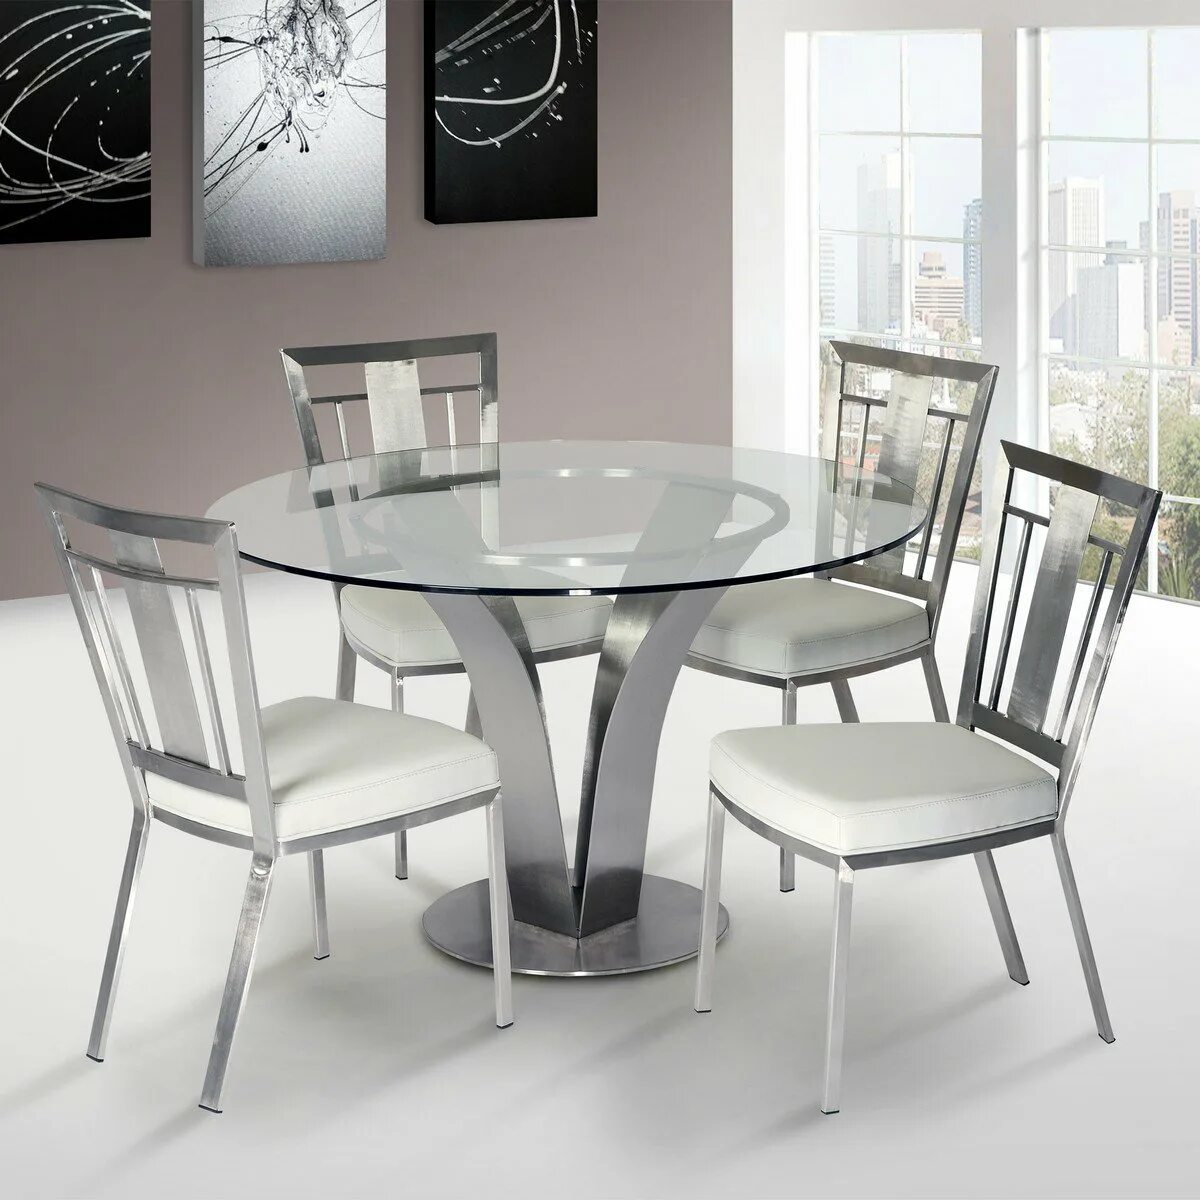 Кухонный стол стулья круглый. Хофф стеклянный стол. Стол стеклянный Twist Steel White. Кухонный стол Hoff стеклянный стол.